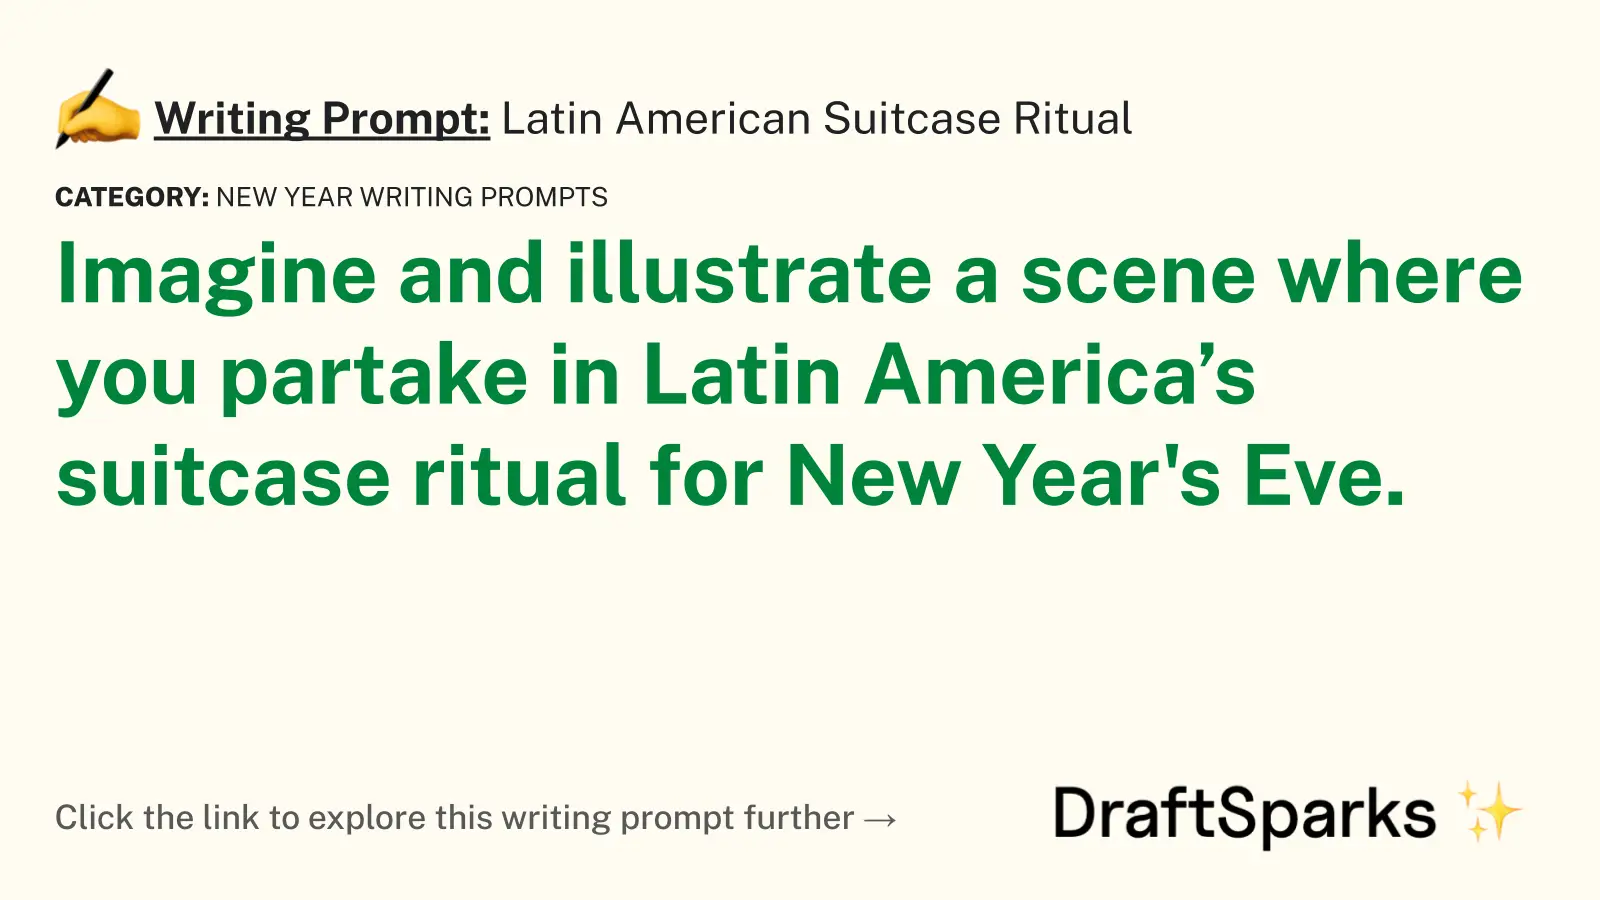 Latin American Suitcase Ritual